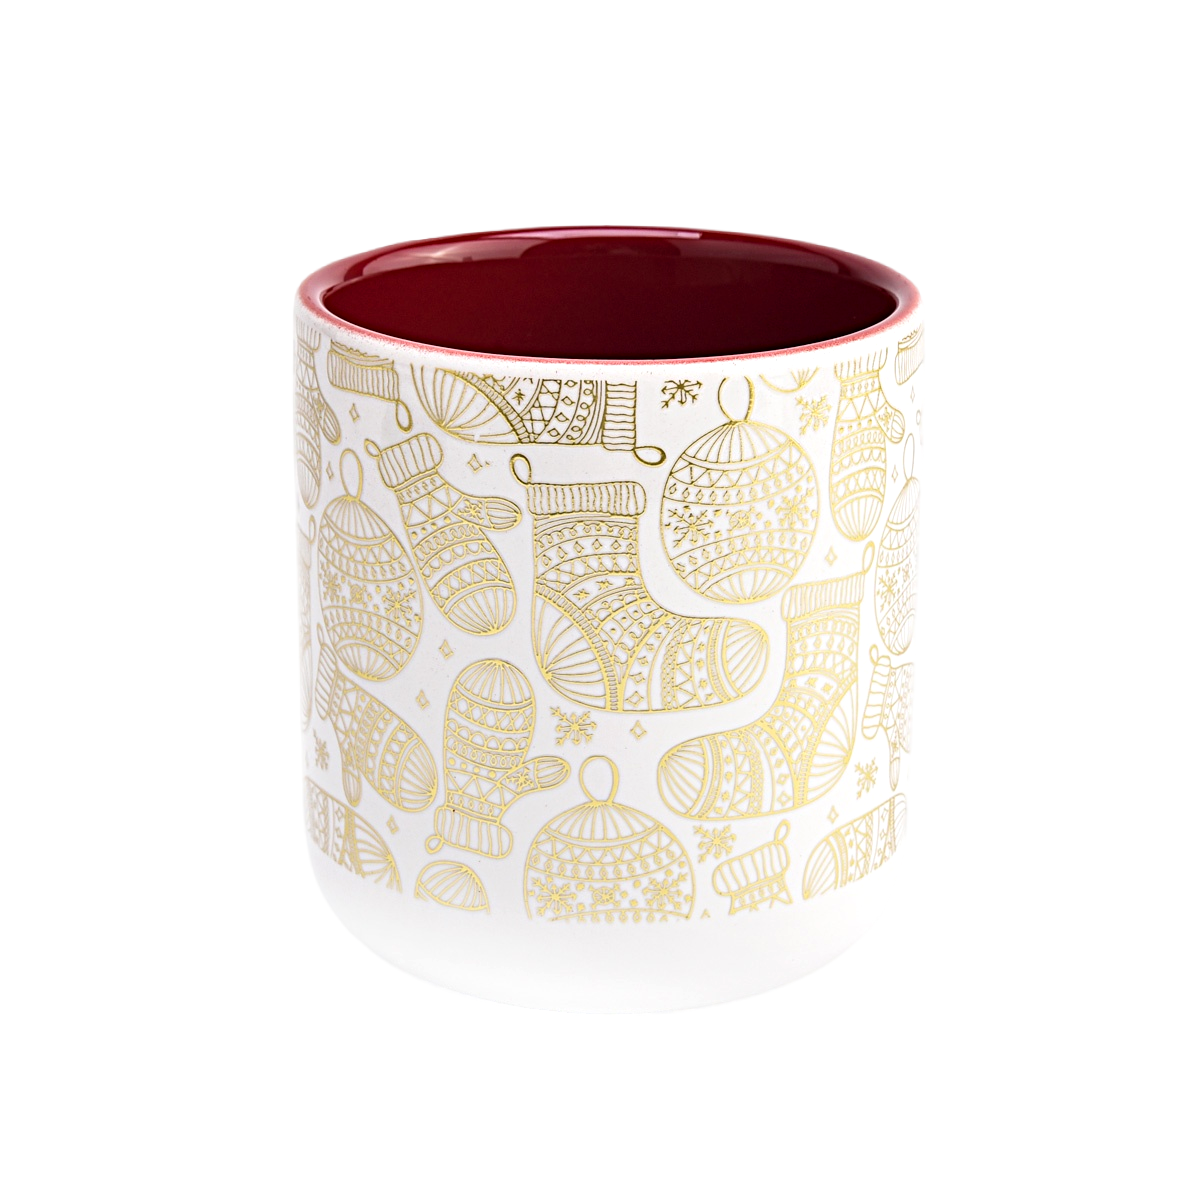 Luxuriöse leere Keramikkerzengläser mit einzigartigem Weihnachtsapplikationsdruck